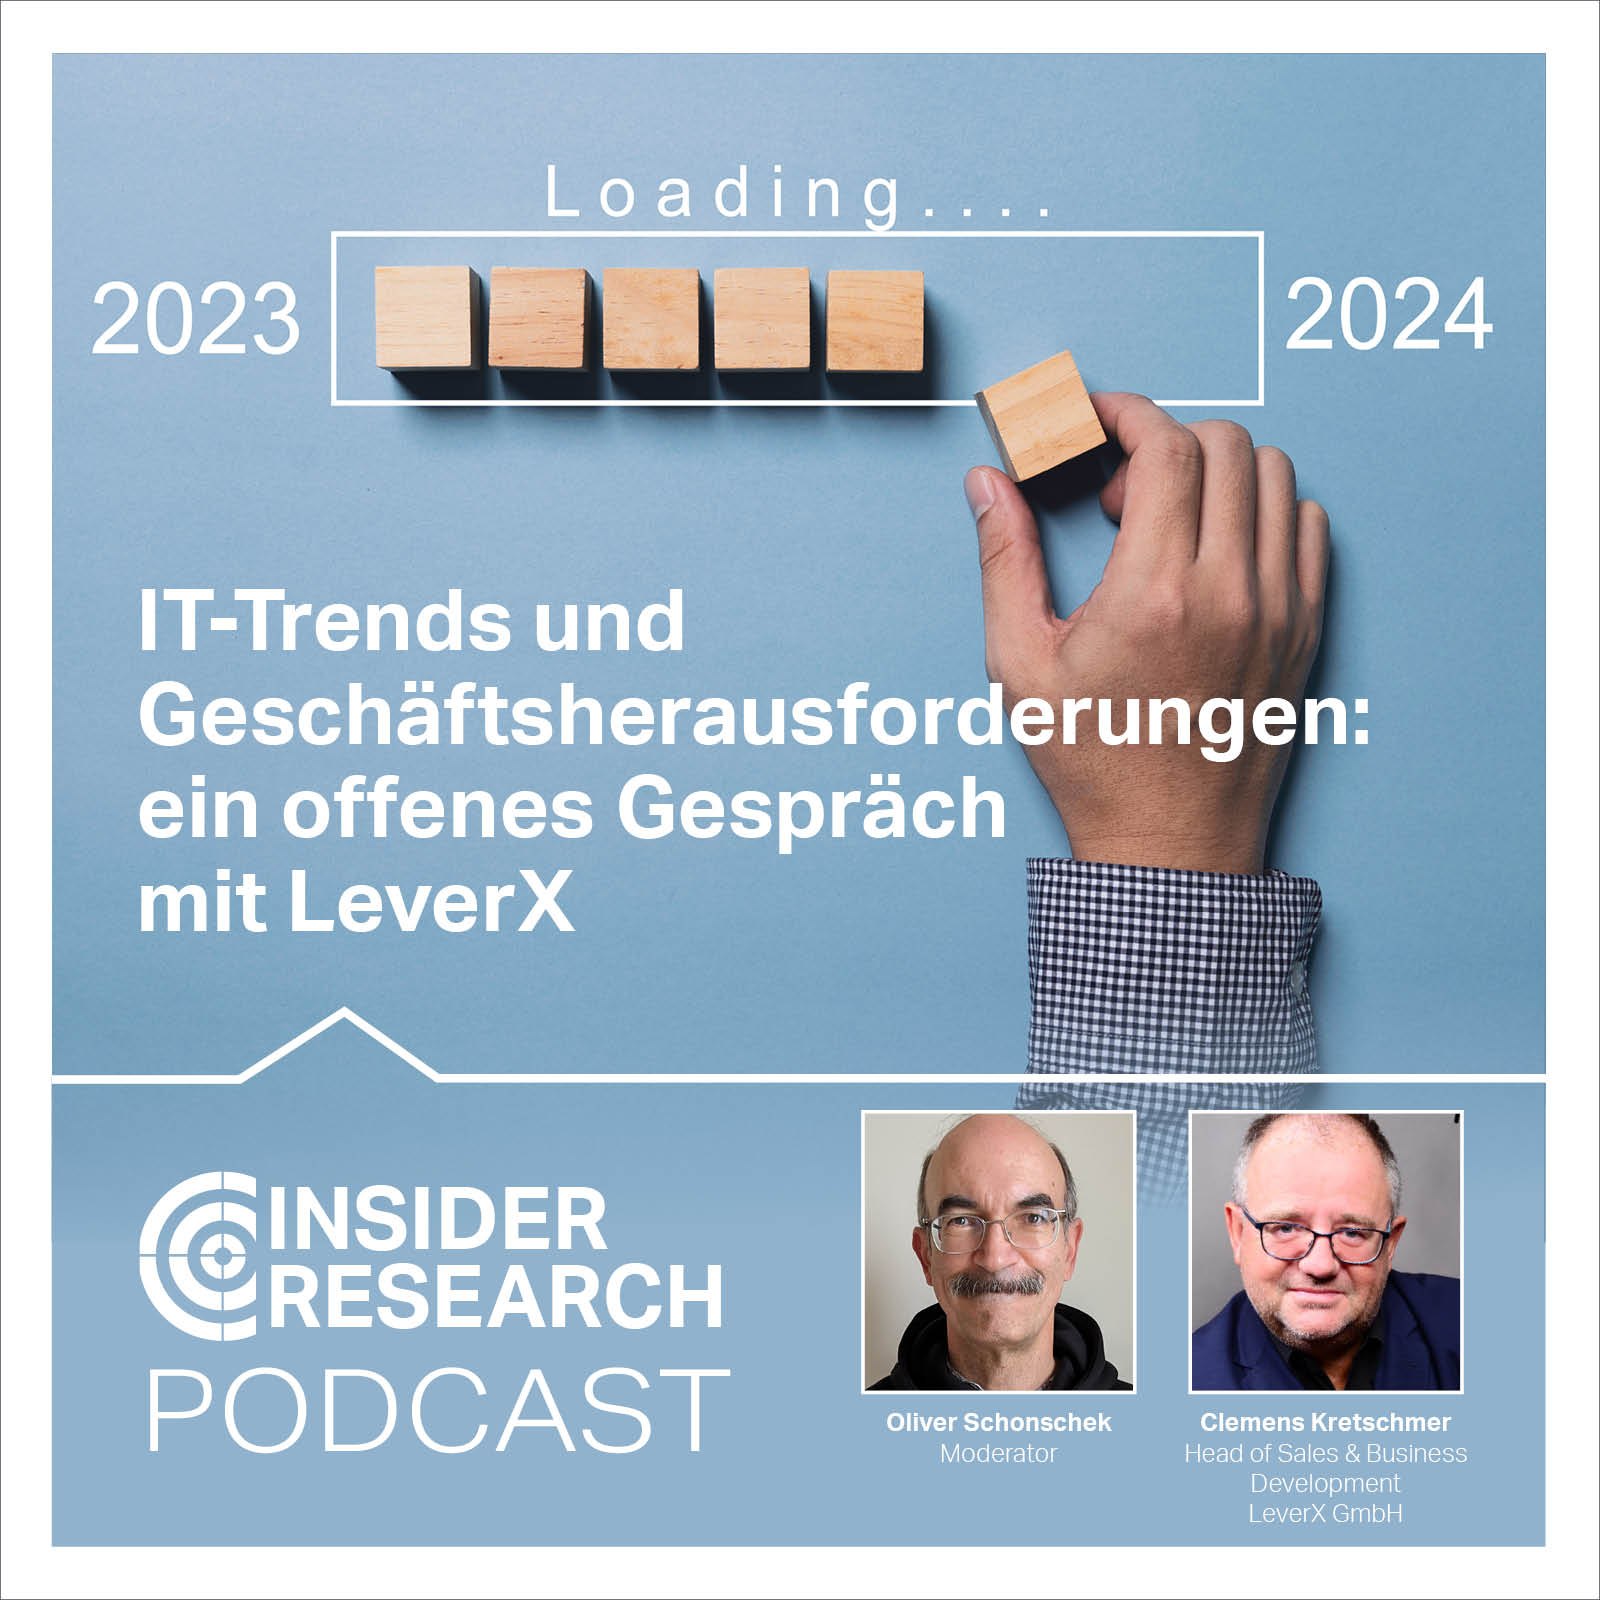 IT-Trends und Geschäftsherausforderungen: ein offenes Gespräch mit LeverX, mit Clemens Kretschmer von LeverX